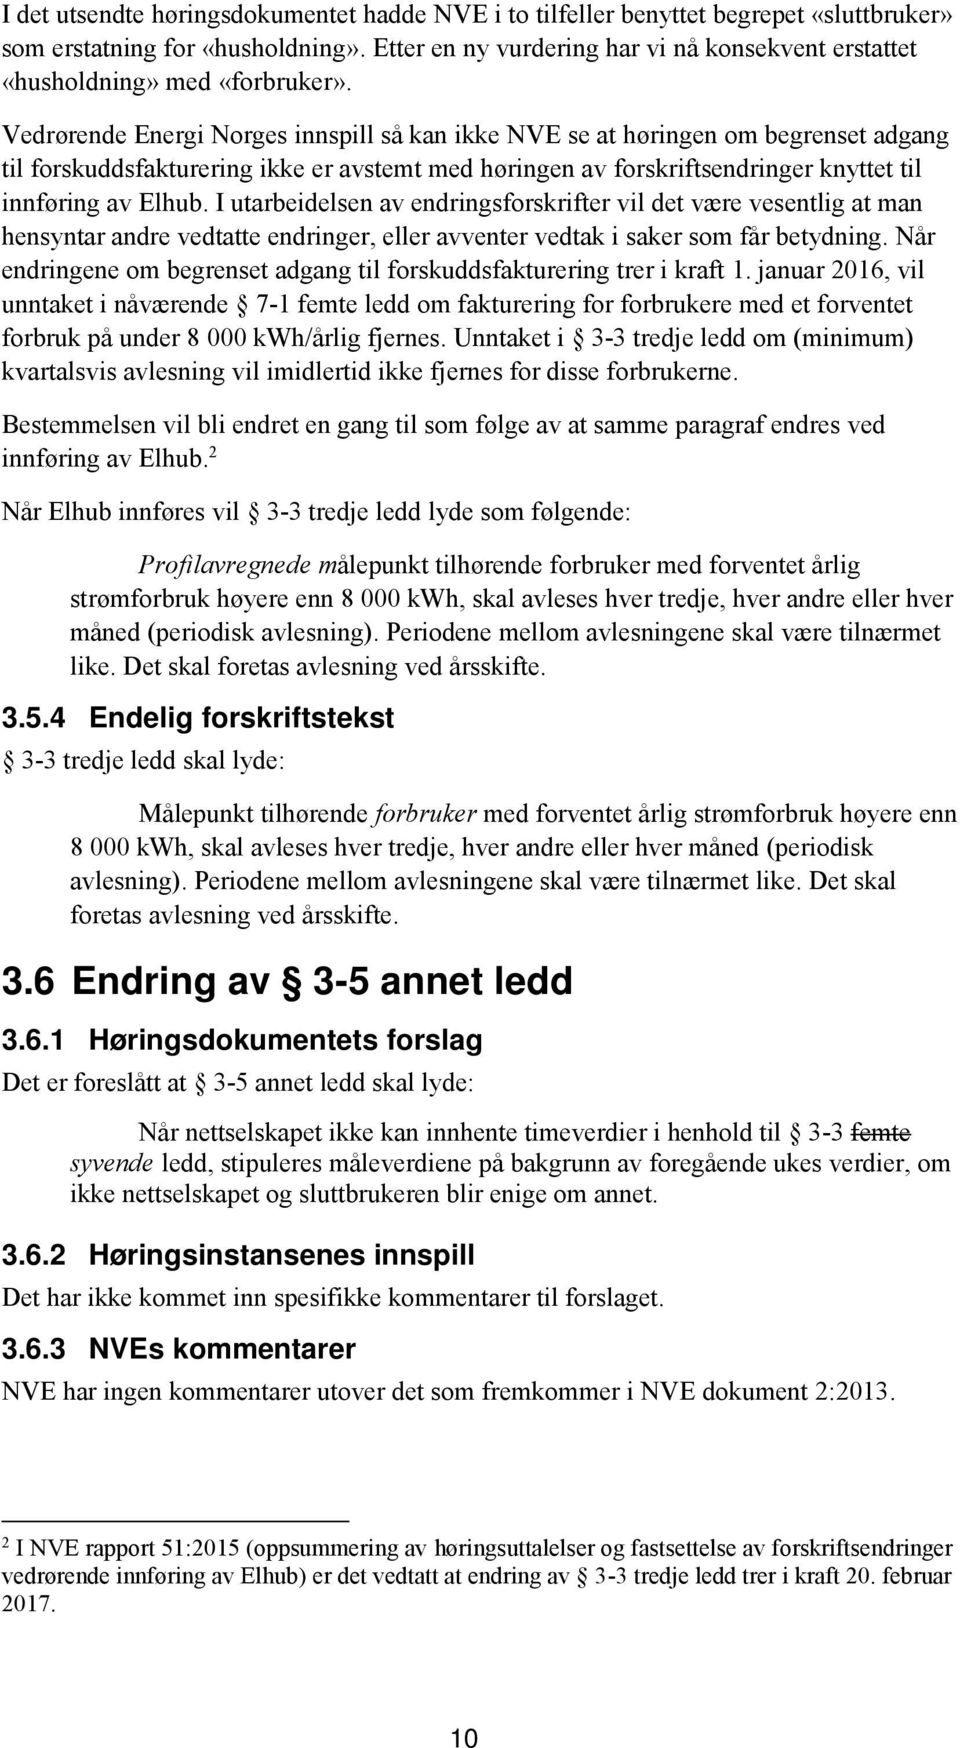 Vedrørende Energi Norges innspill så kan ikke NVE se at høringen om begrenset adgang til forskuddsfakturering ikke er avstemt med høringen av forskriftsendringer knyttet til innføring av Elhub.